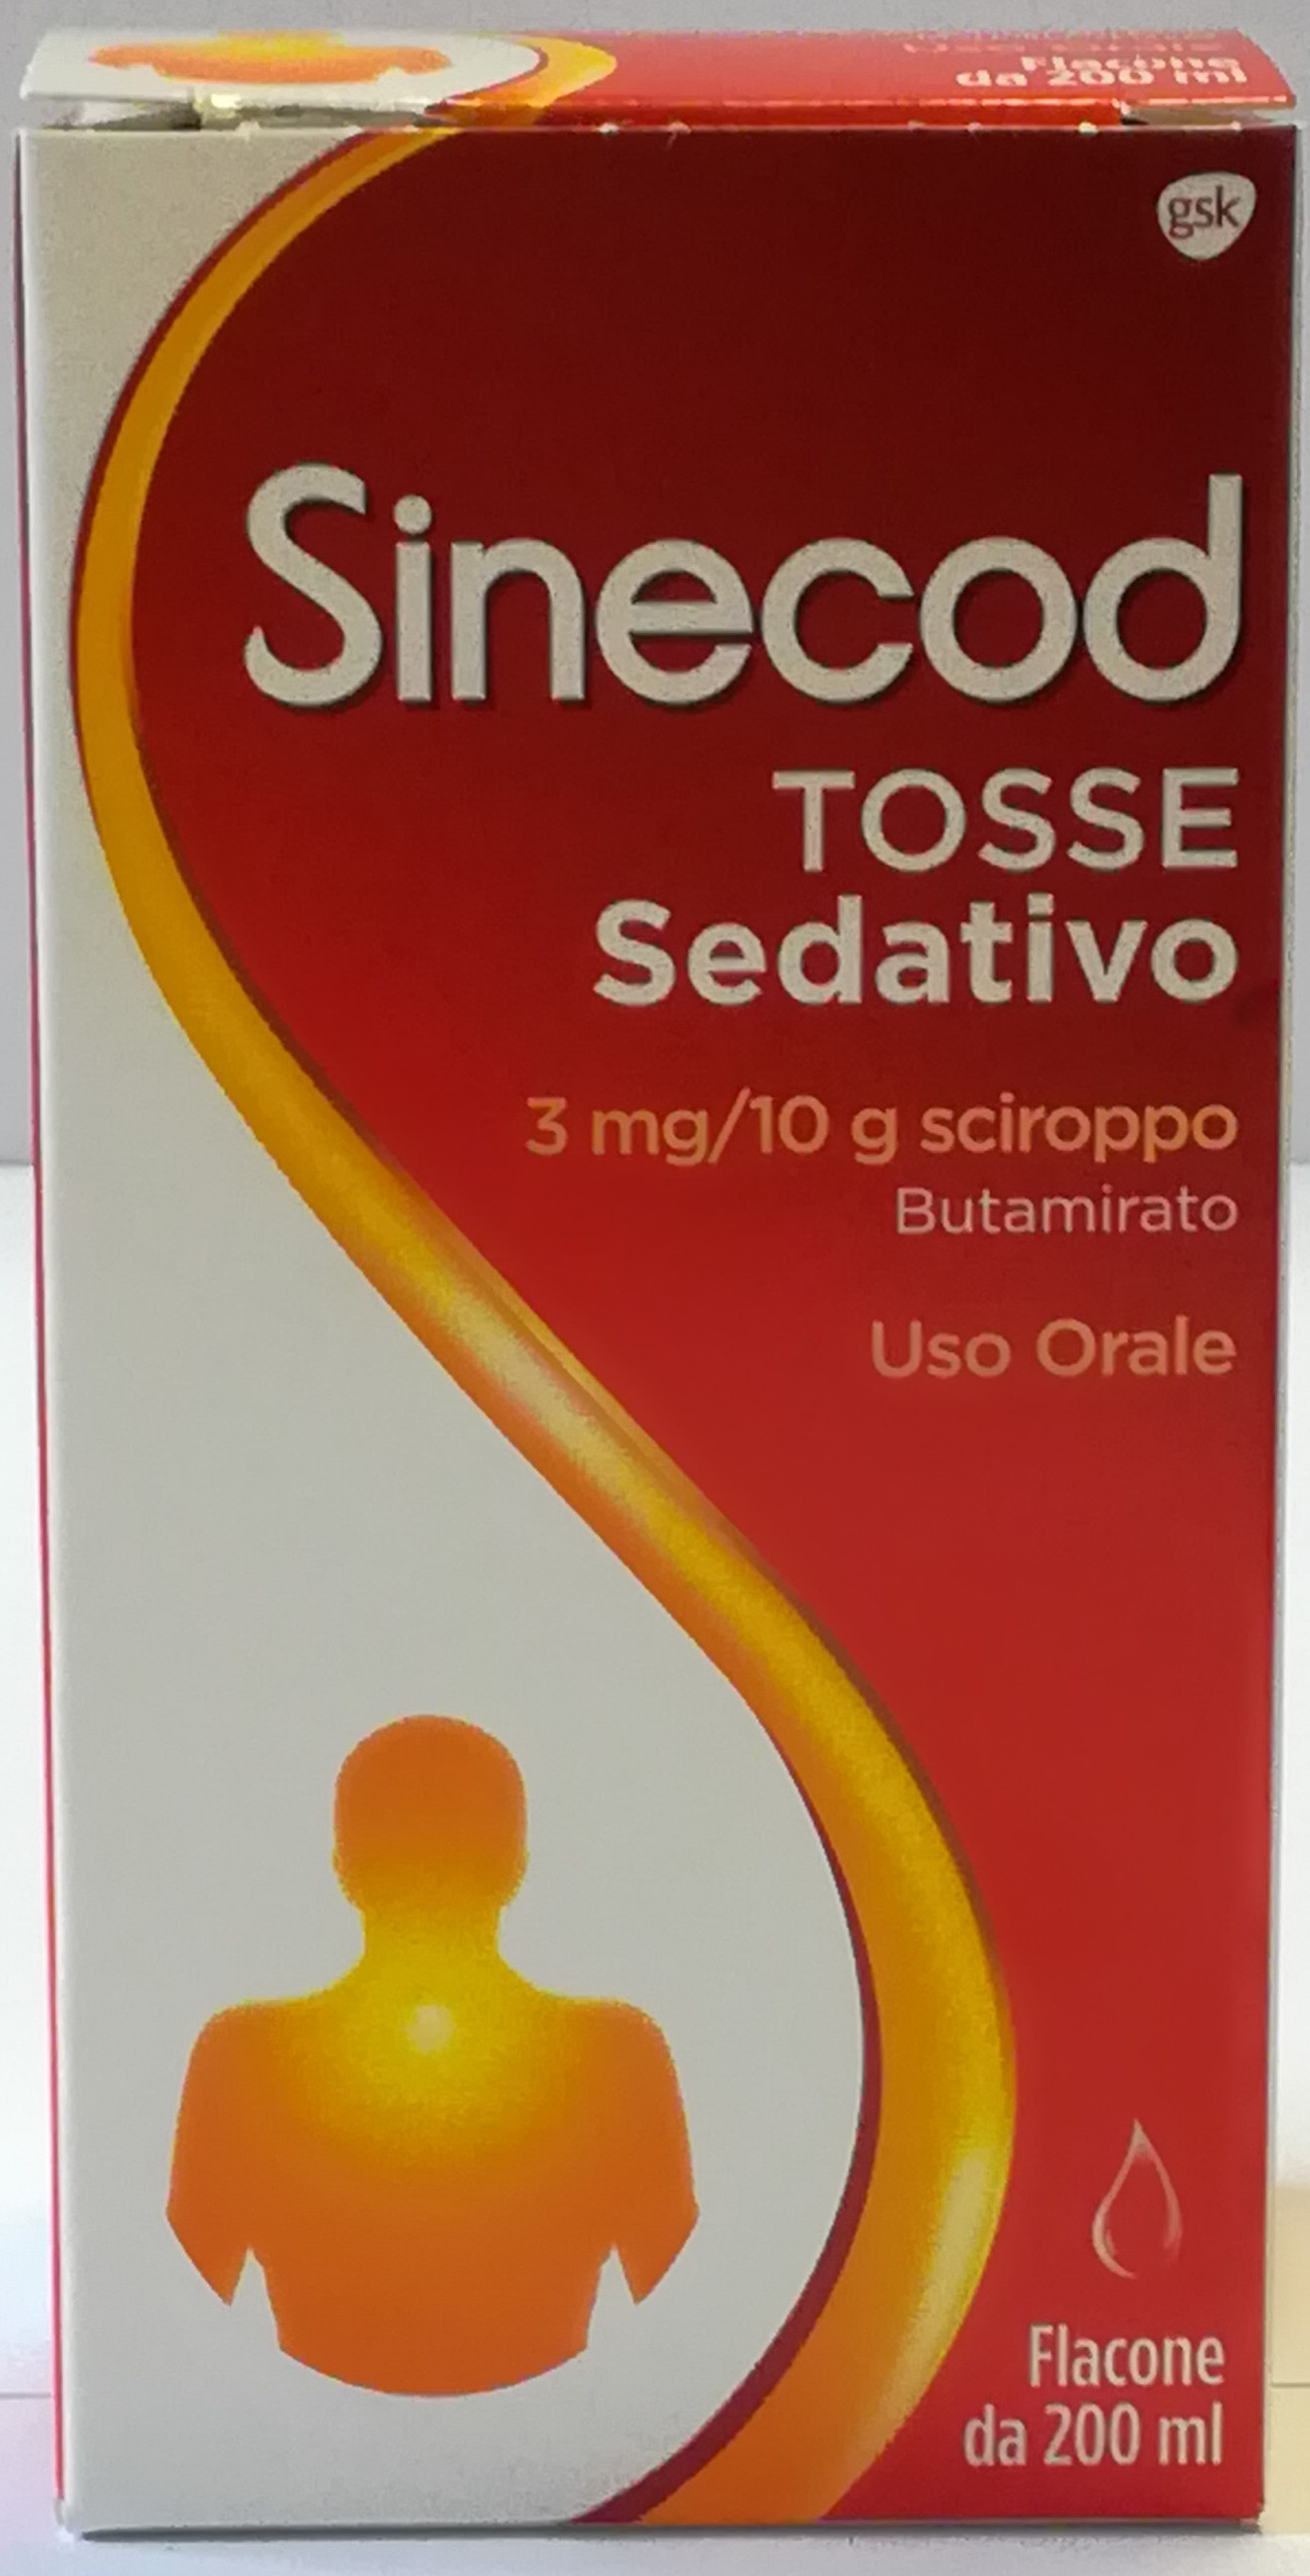 Sinecod Sciroppo Per La Tosse Sedativo 200 ml - Sinecod Sciroppo Per La Tosse Sedativo 200 ml